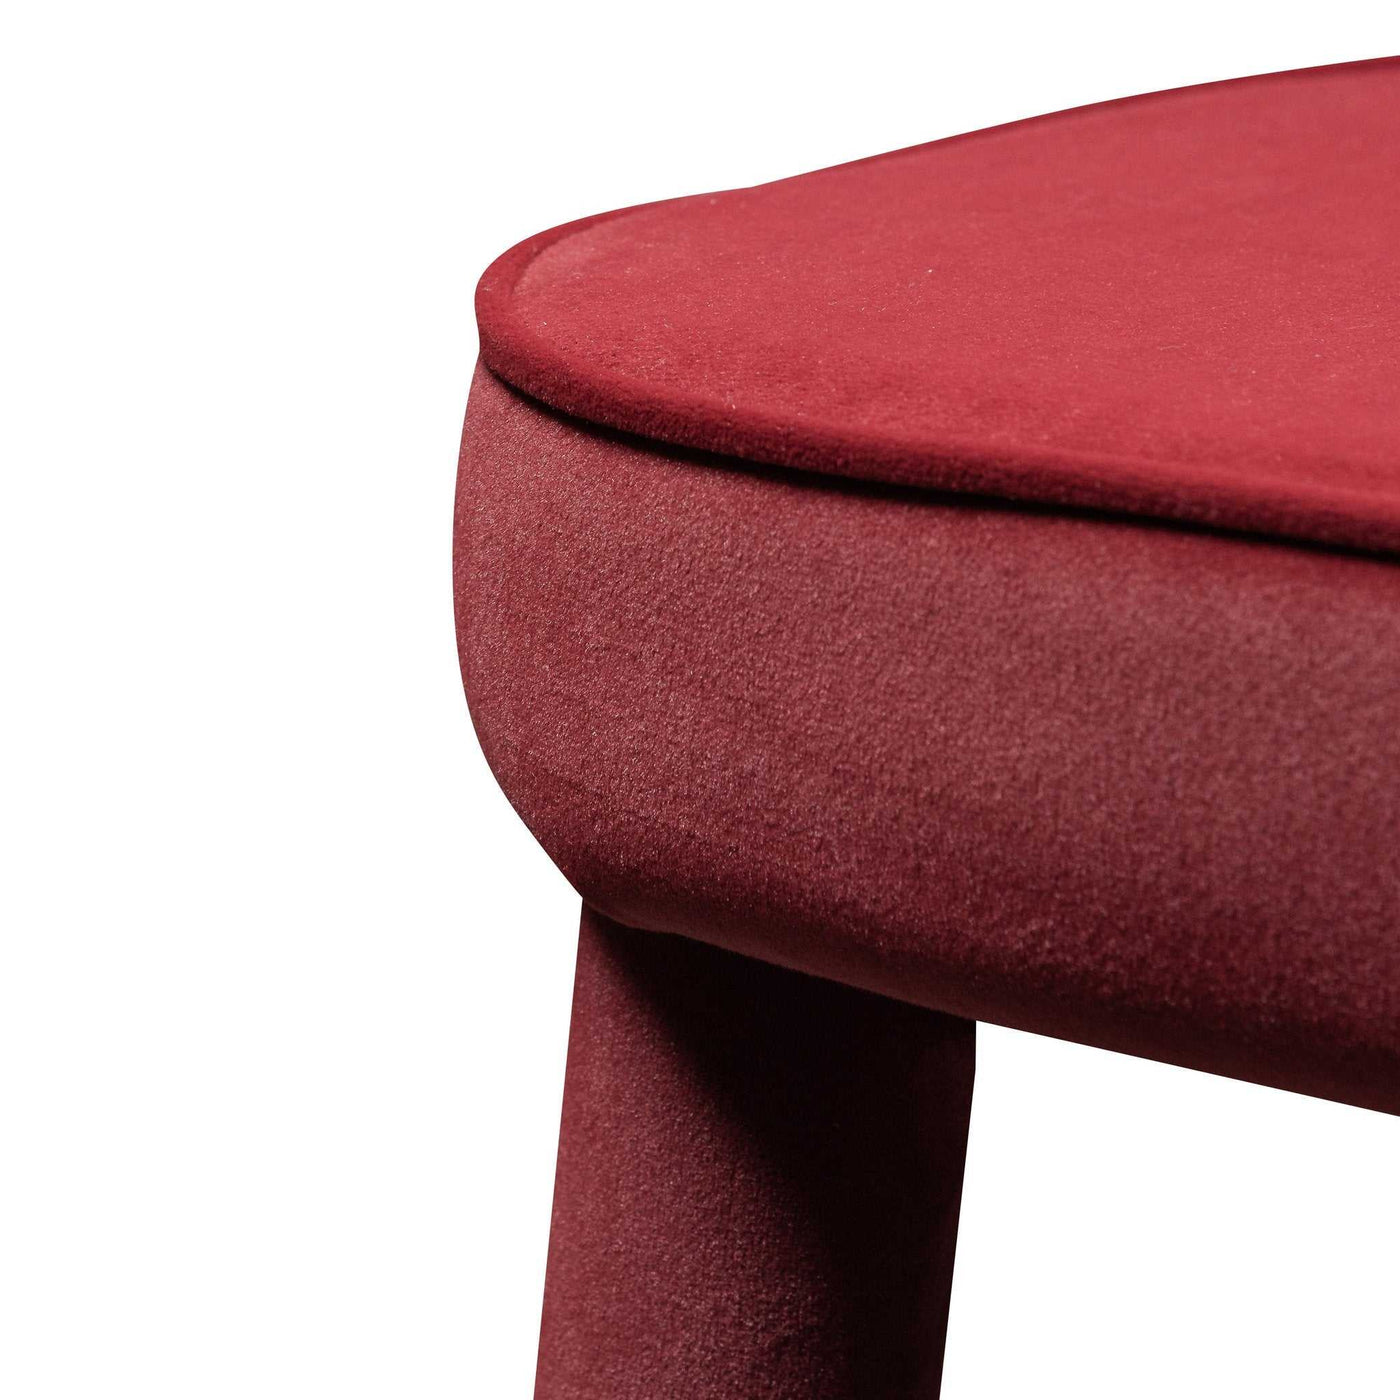 Dining Chair - Ruby Red Velvet